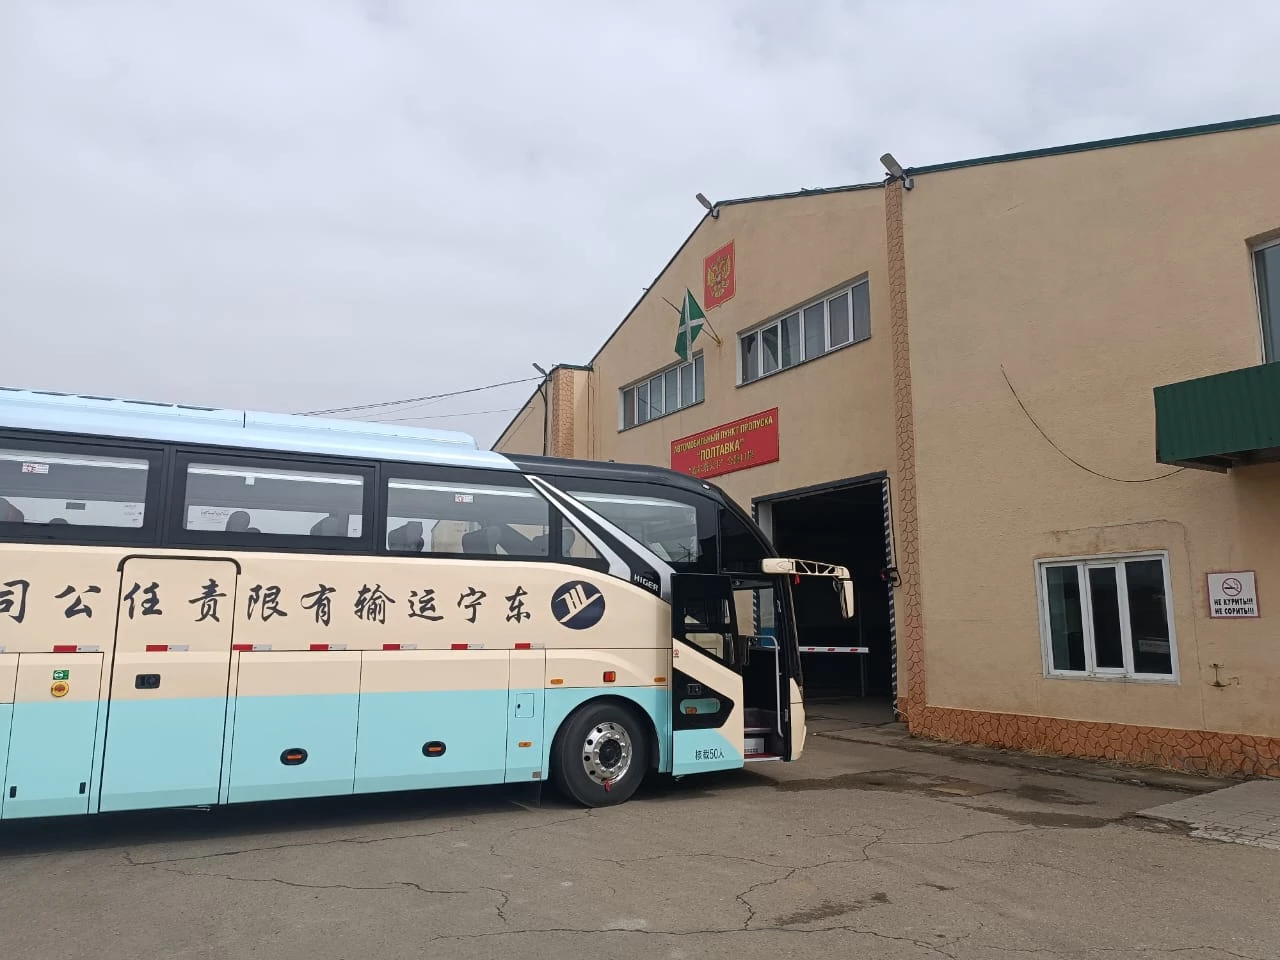 Первые пассажирские автобусы пересекли границу через пункт пропуска Полтавка (РФ) -Дунин (КНР) после долгого перерыва